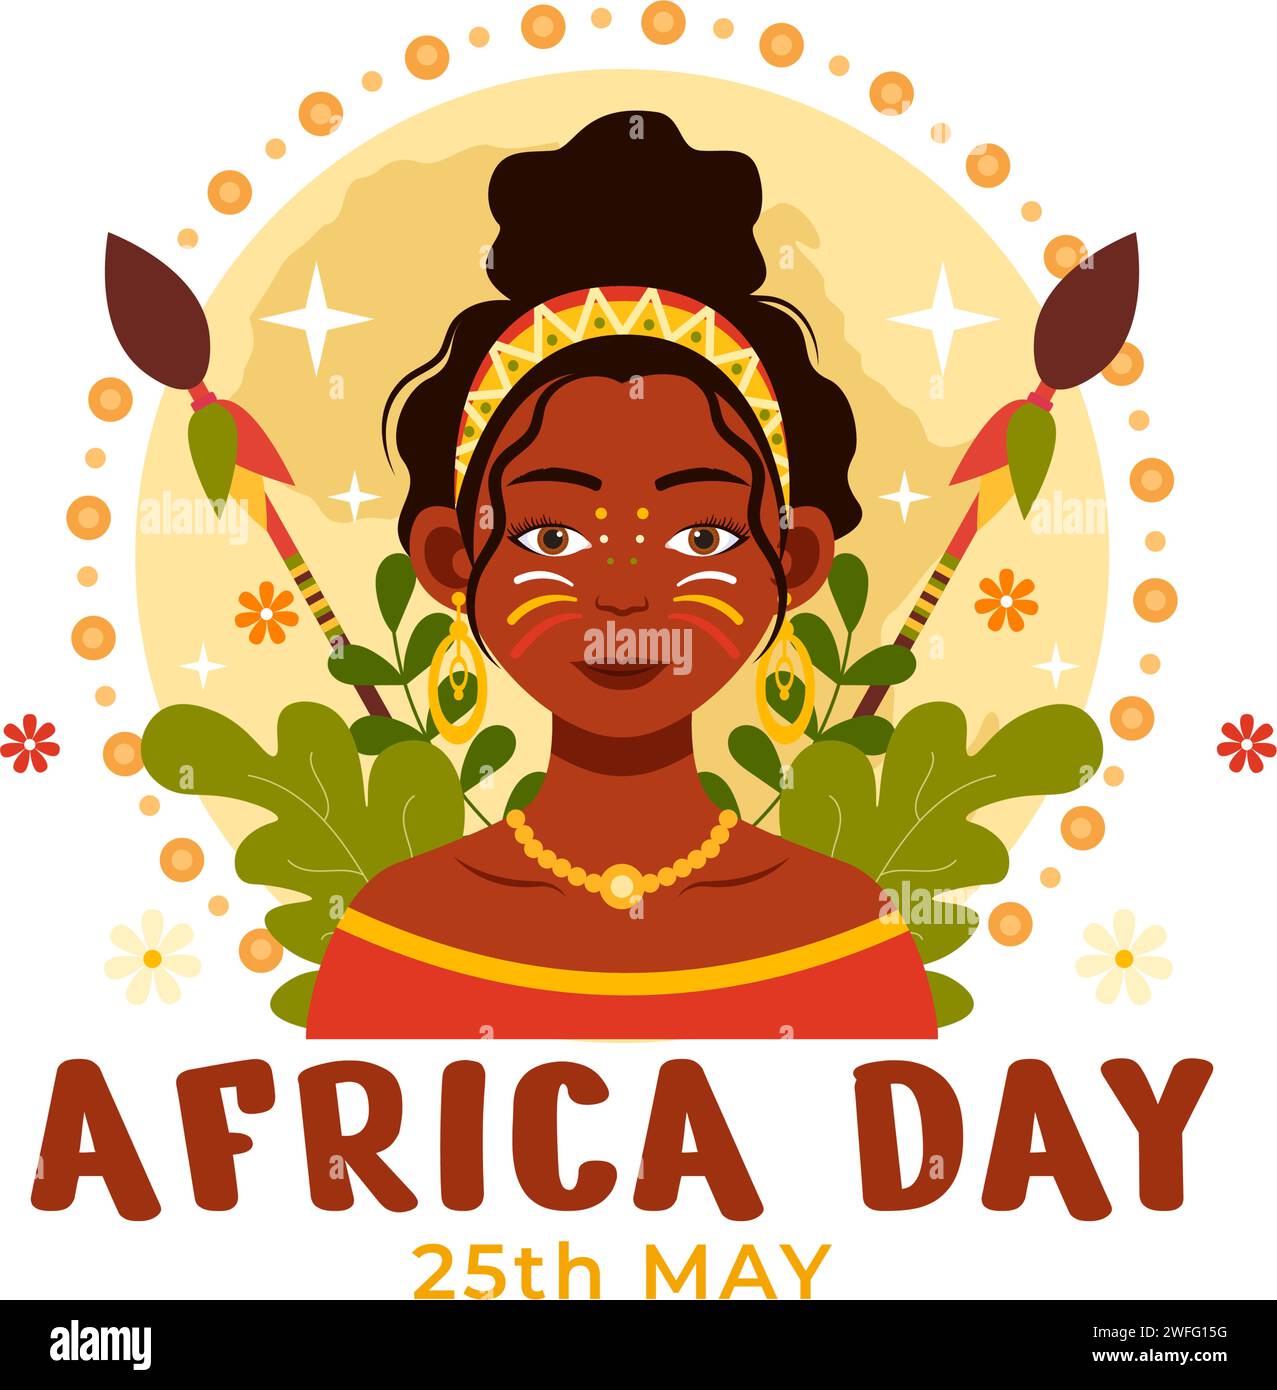 Happy Africa Day Vektor Illustration am 25 Mai mit Kultur afrikanische Stammesfiguren und typisches Tier in Flora und Fauna Flat Cartoon Hintergrund Stock Vektor